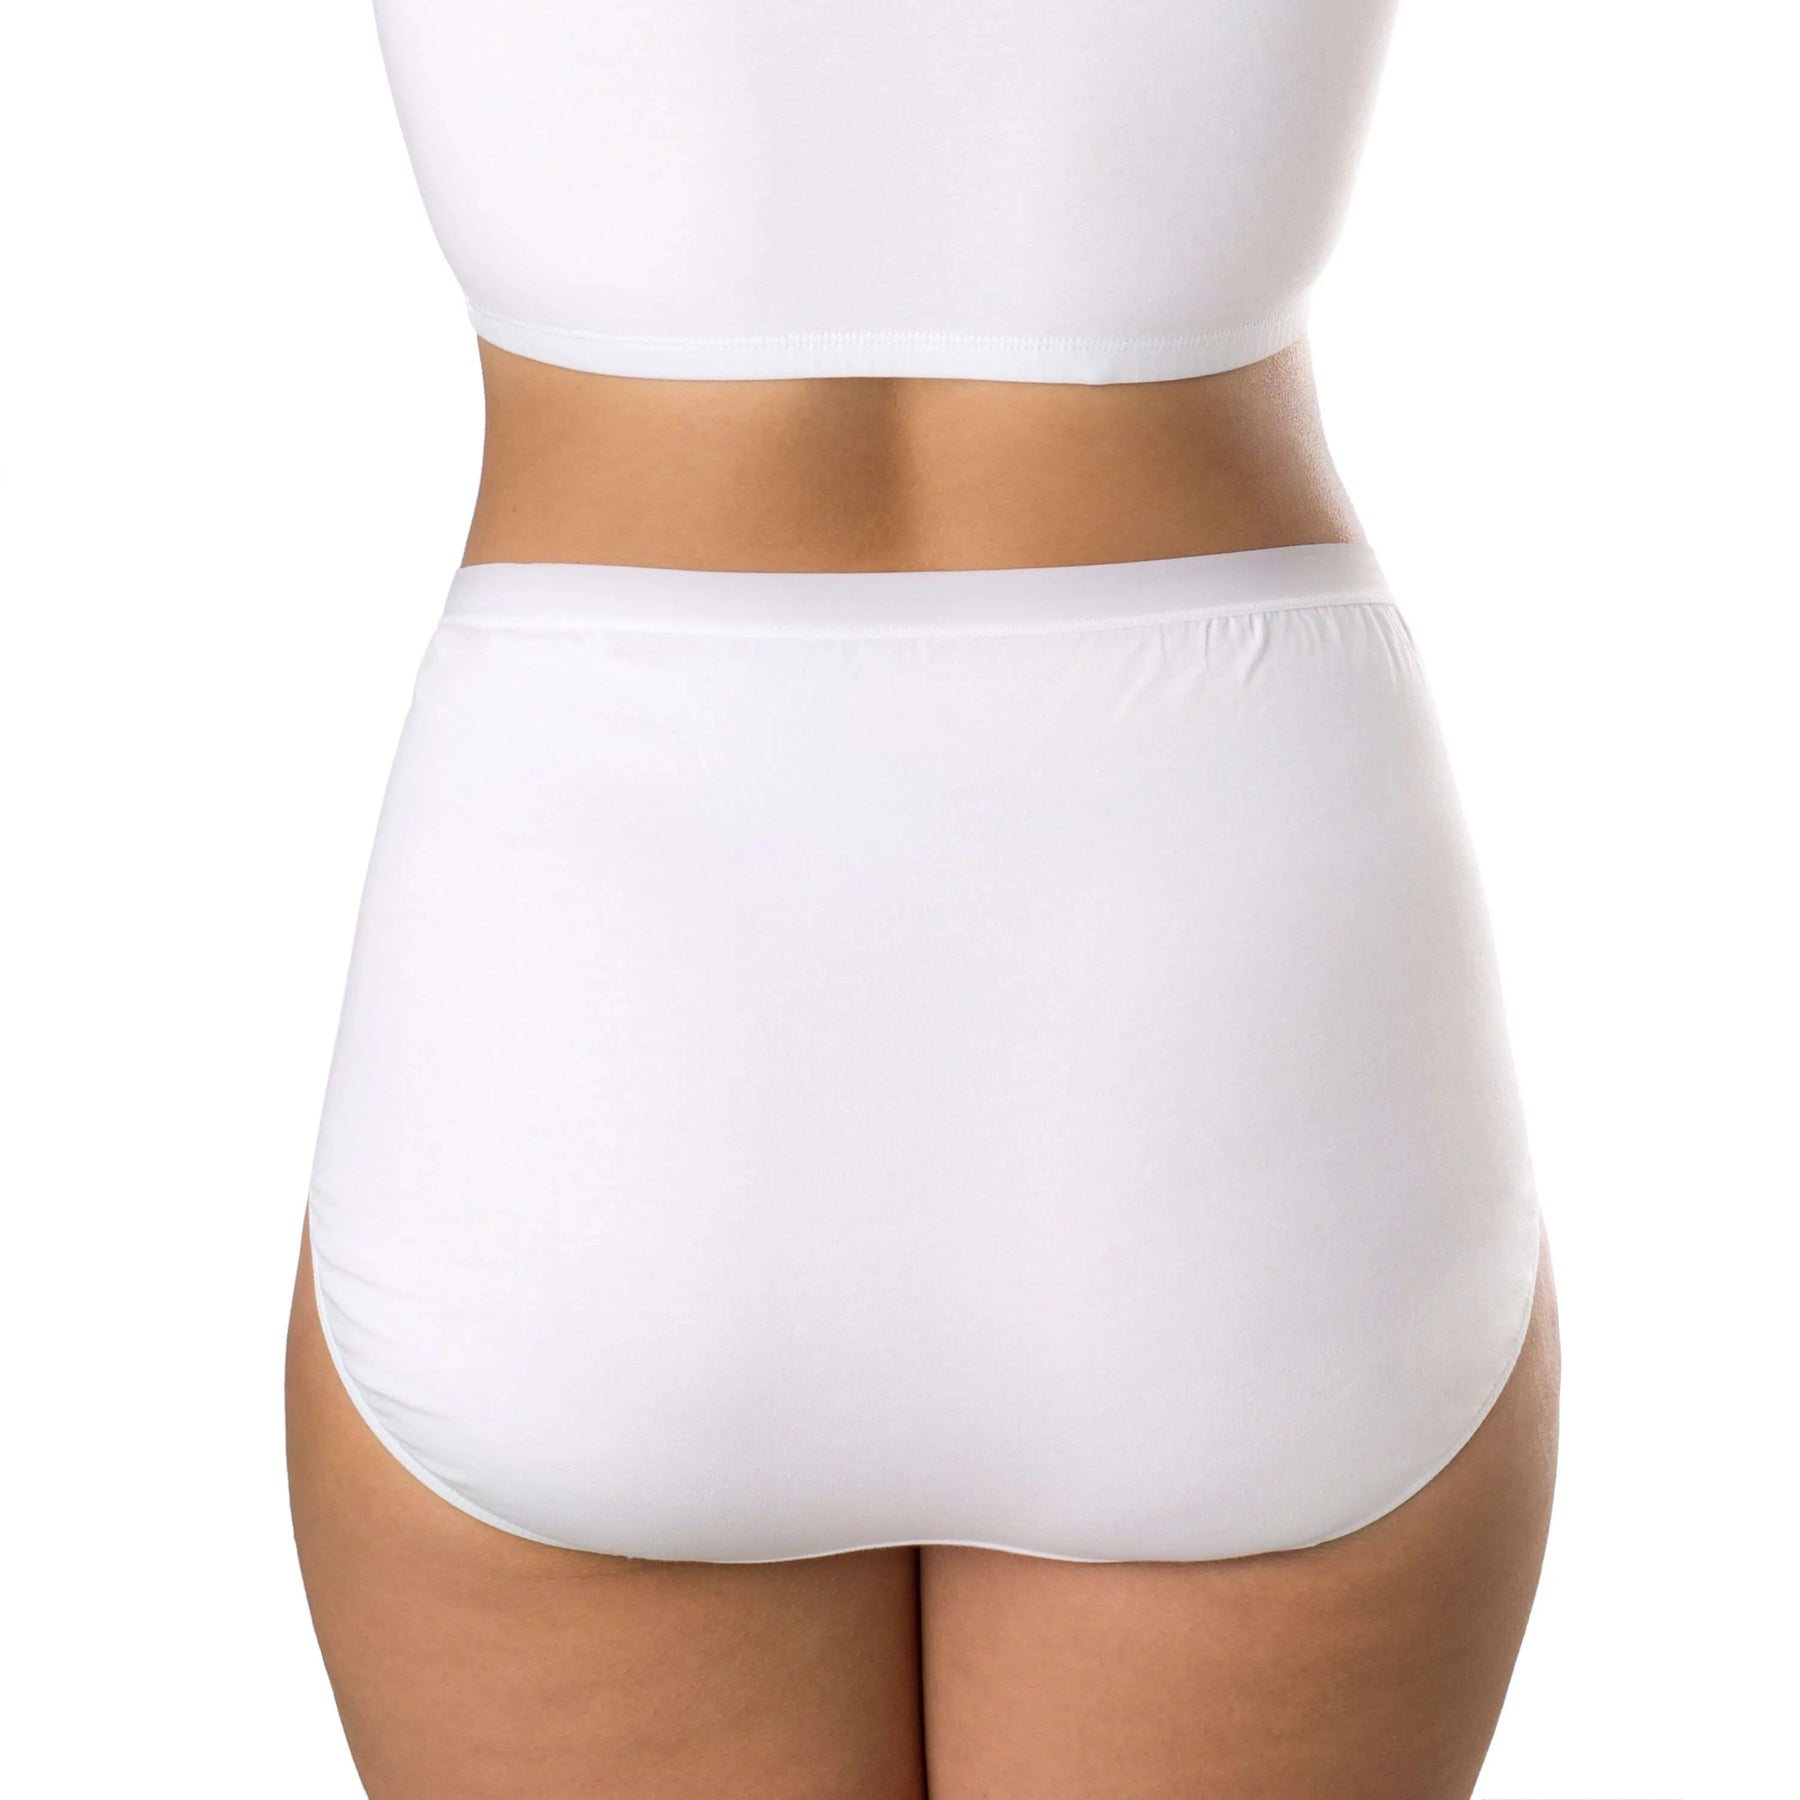 Umiwear 100% Cotton Panty Plus Size Panty Women's Panties Big Size XXL